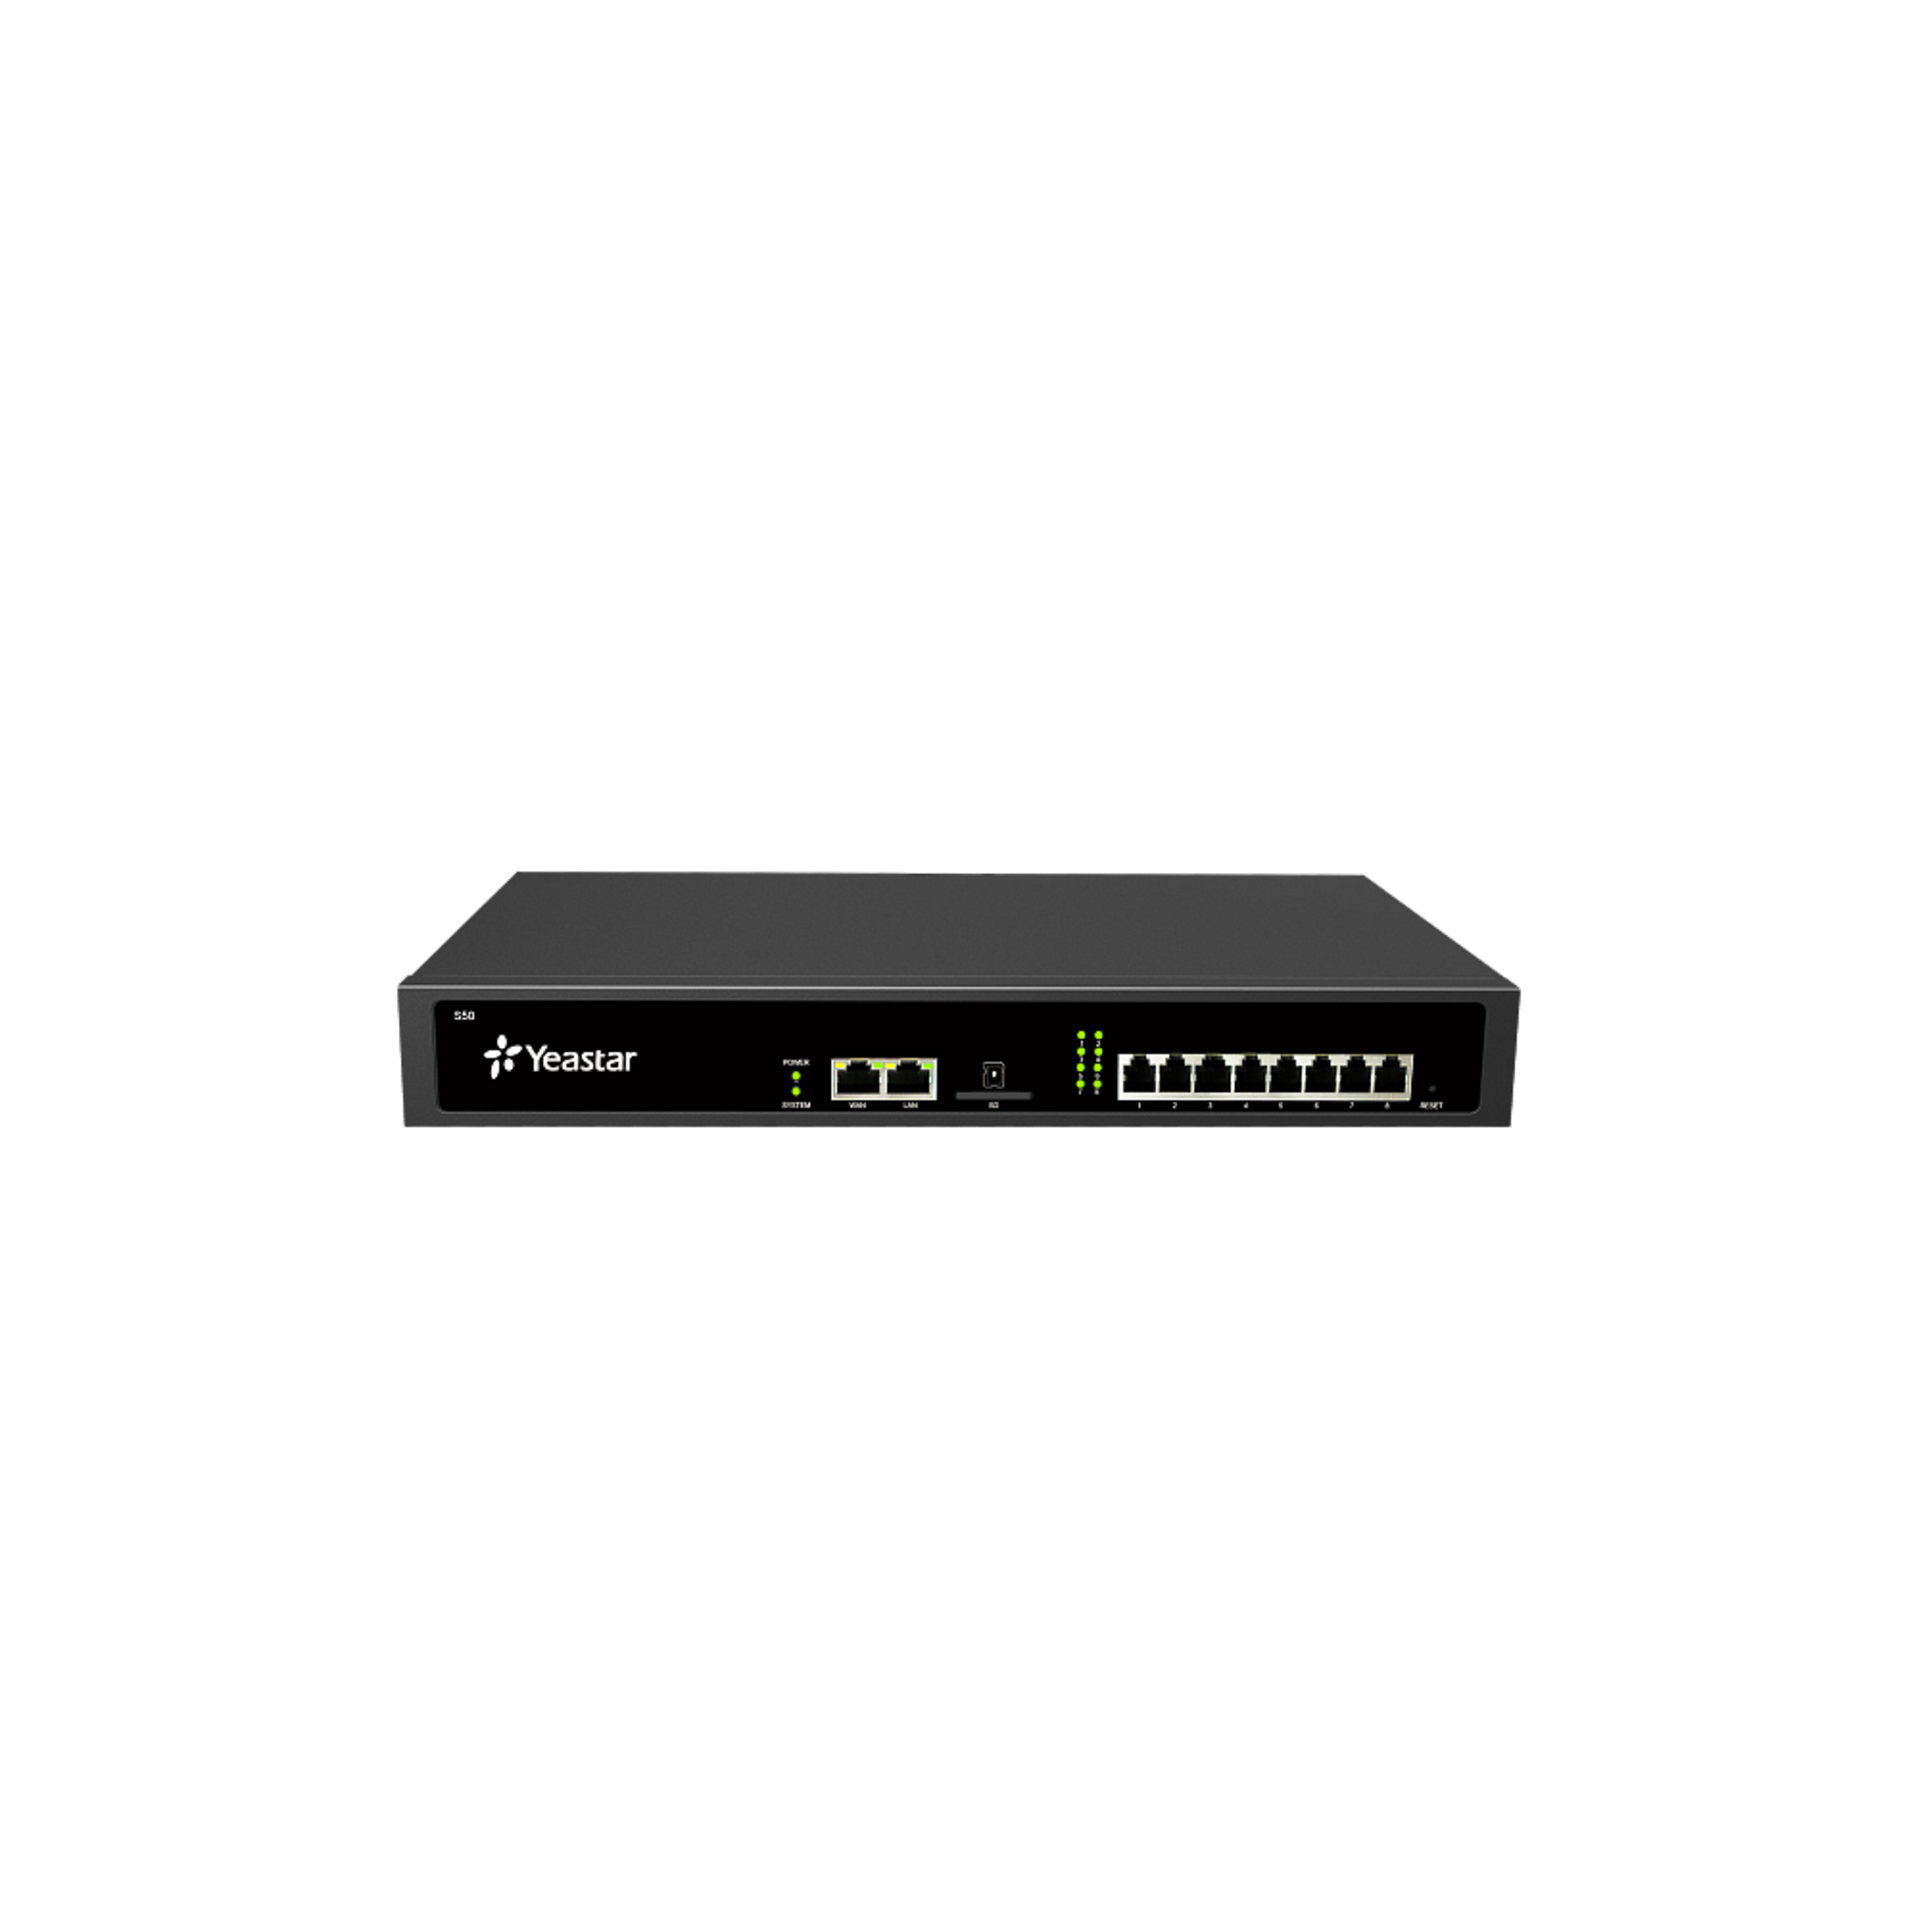 IP АТС Yeastar S50, 50 абонентов и 25 вызовов, поддержка FXO, FXS, GSM, BRI